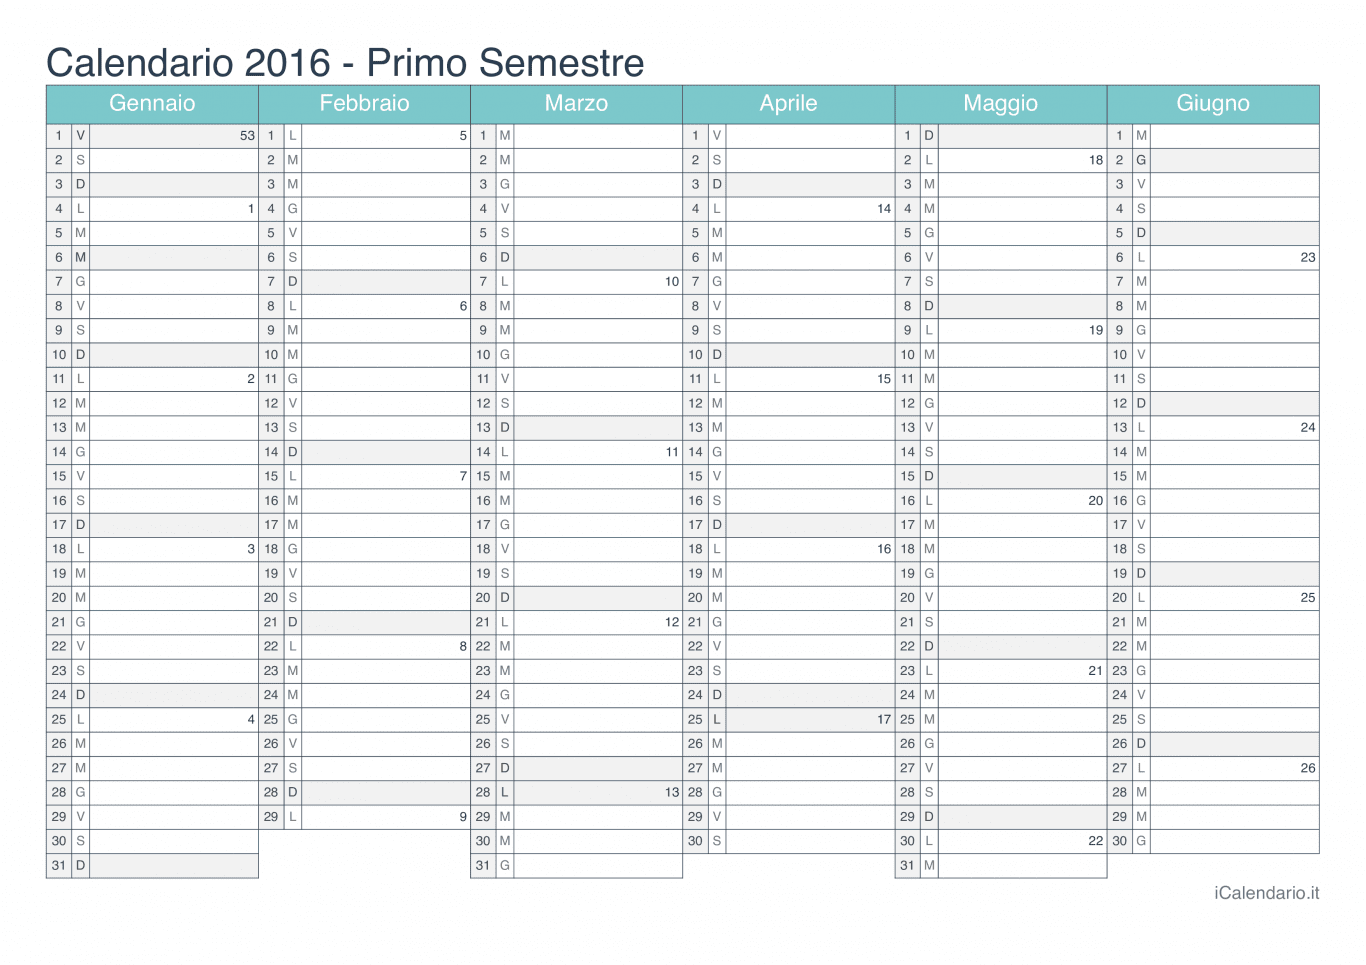 Calendario semestrale con numeri delle settimane 2016 - Turchese